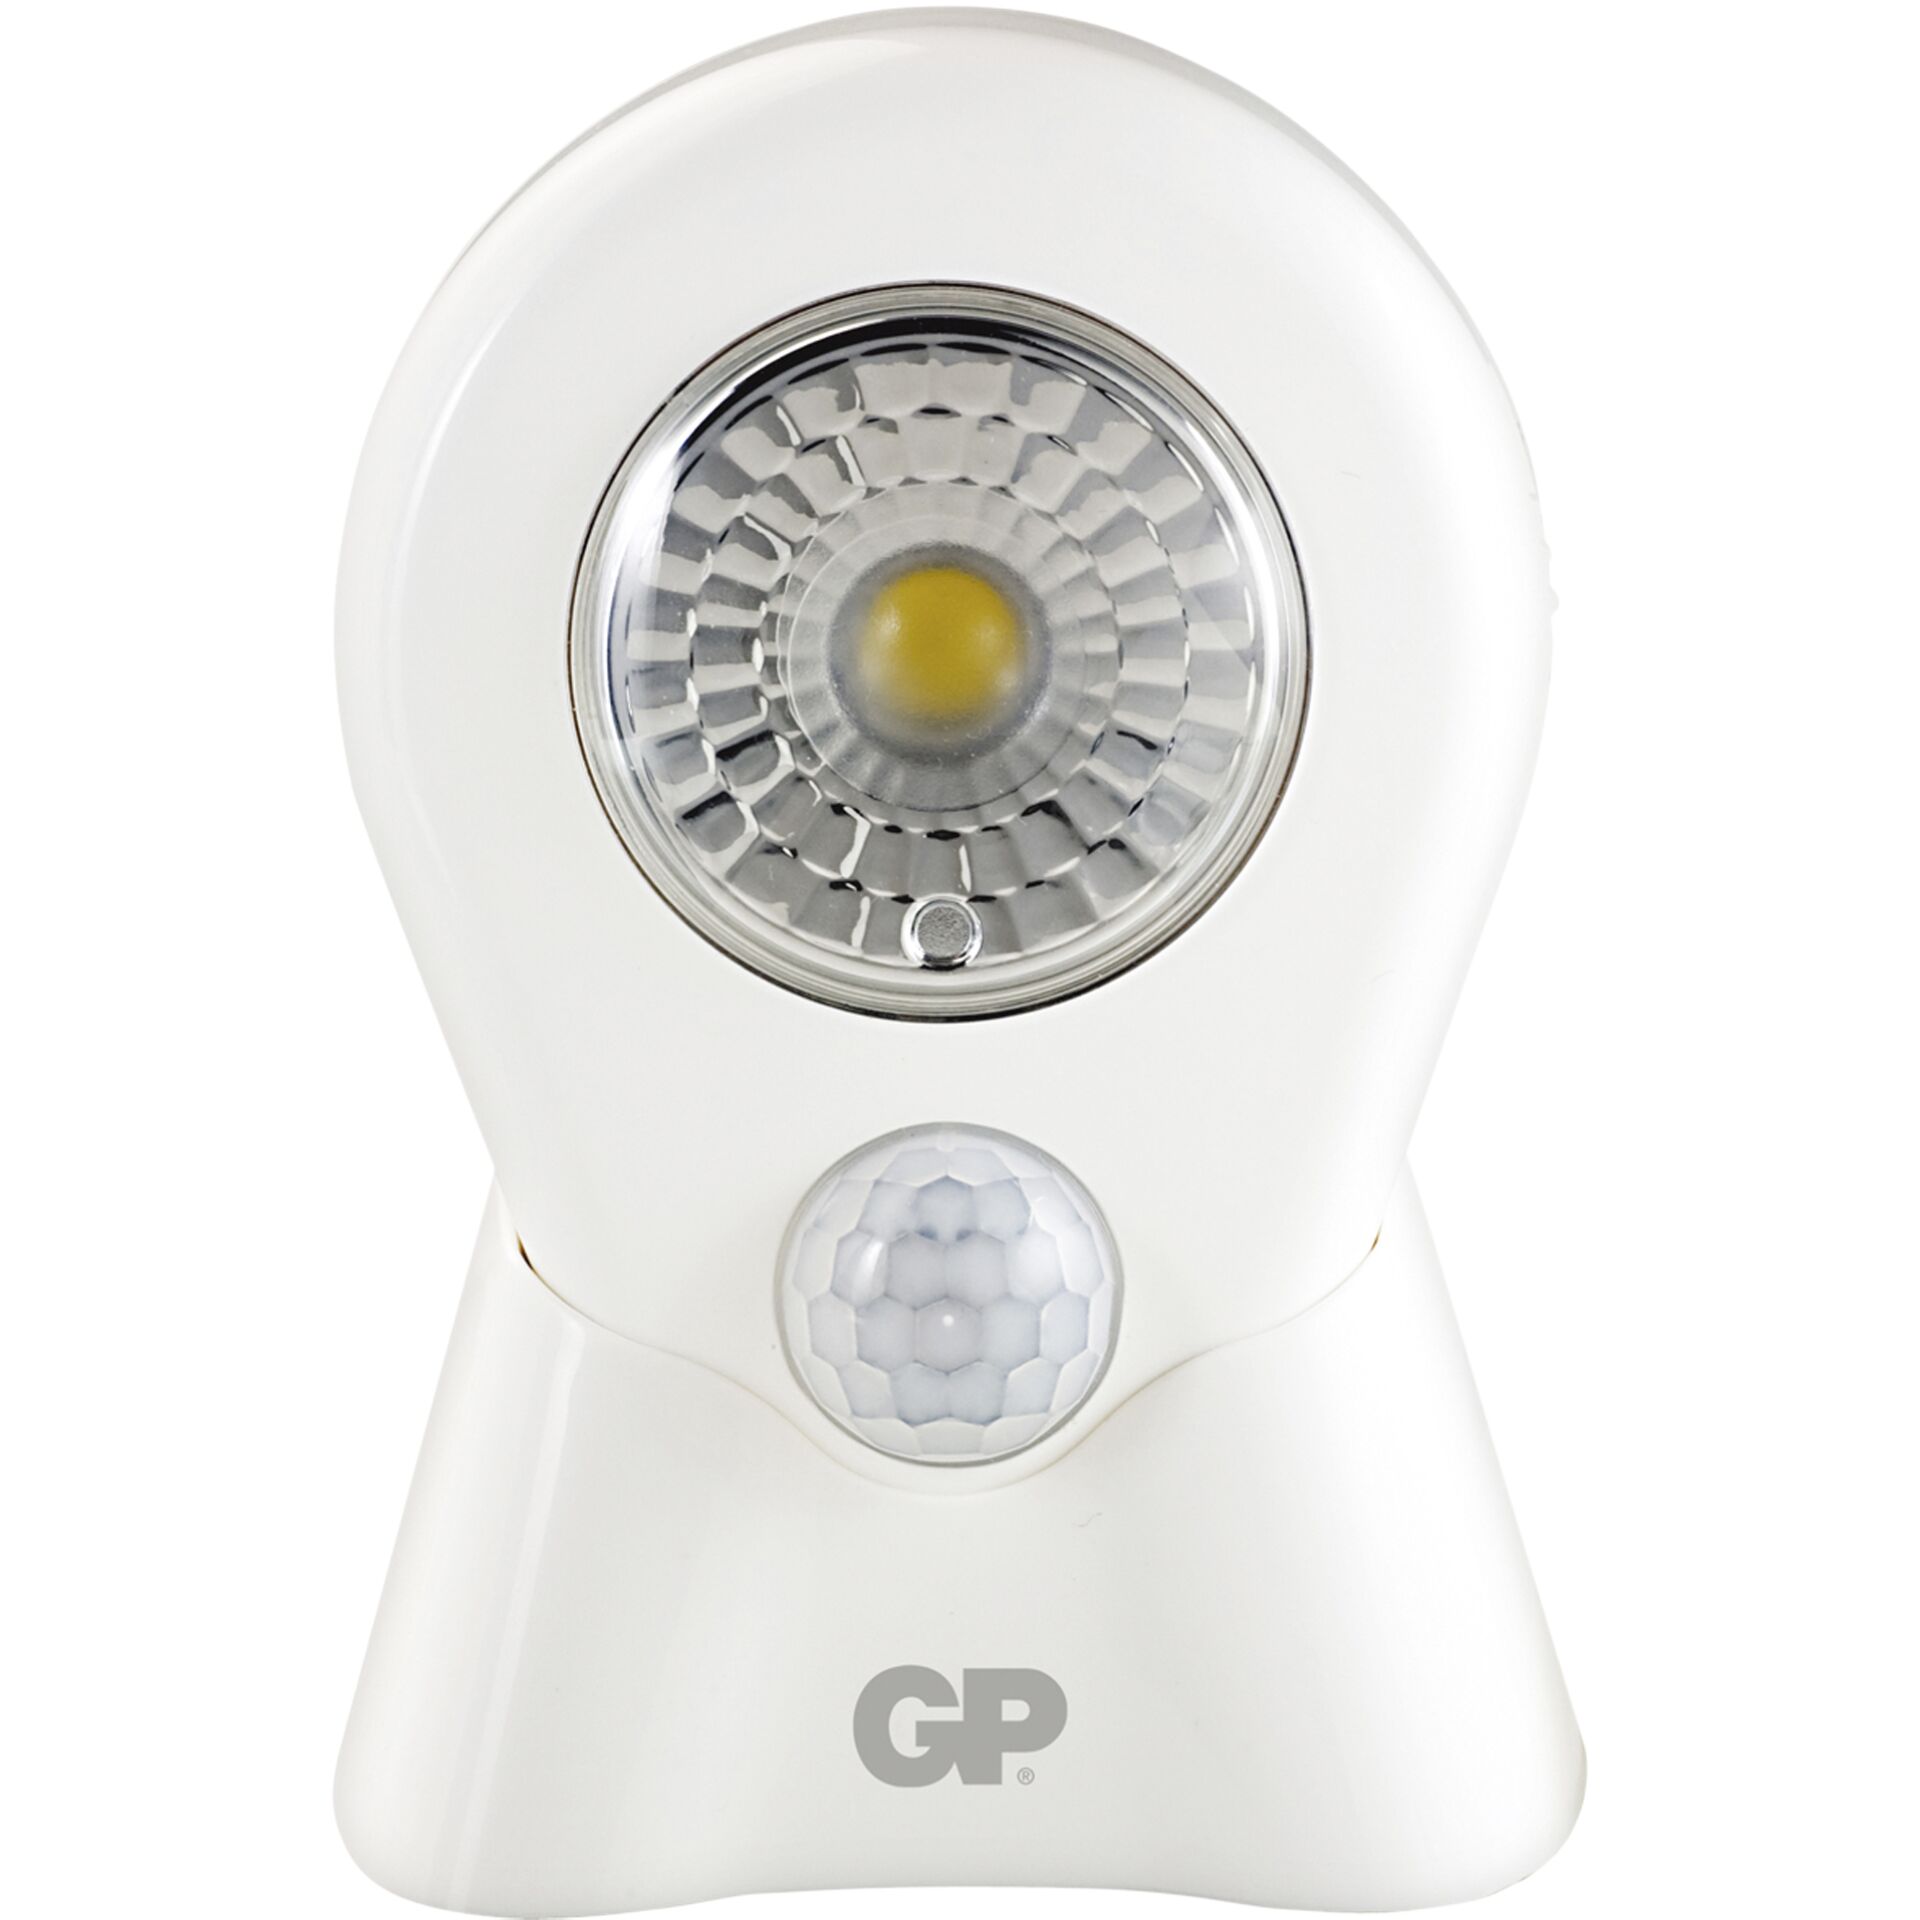 GP Lighting Nomad lampada LED con sensore di movimento